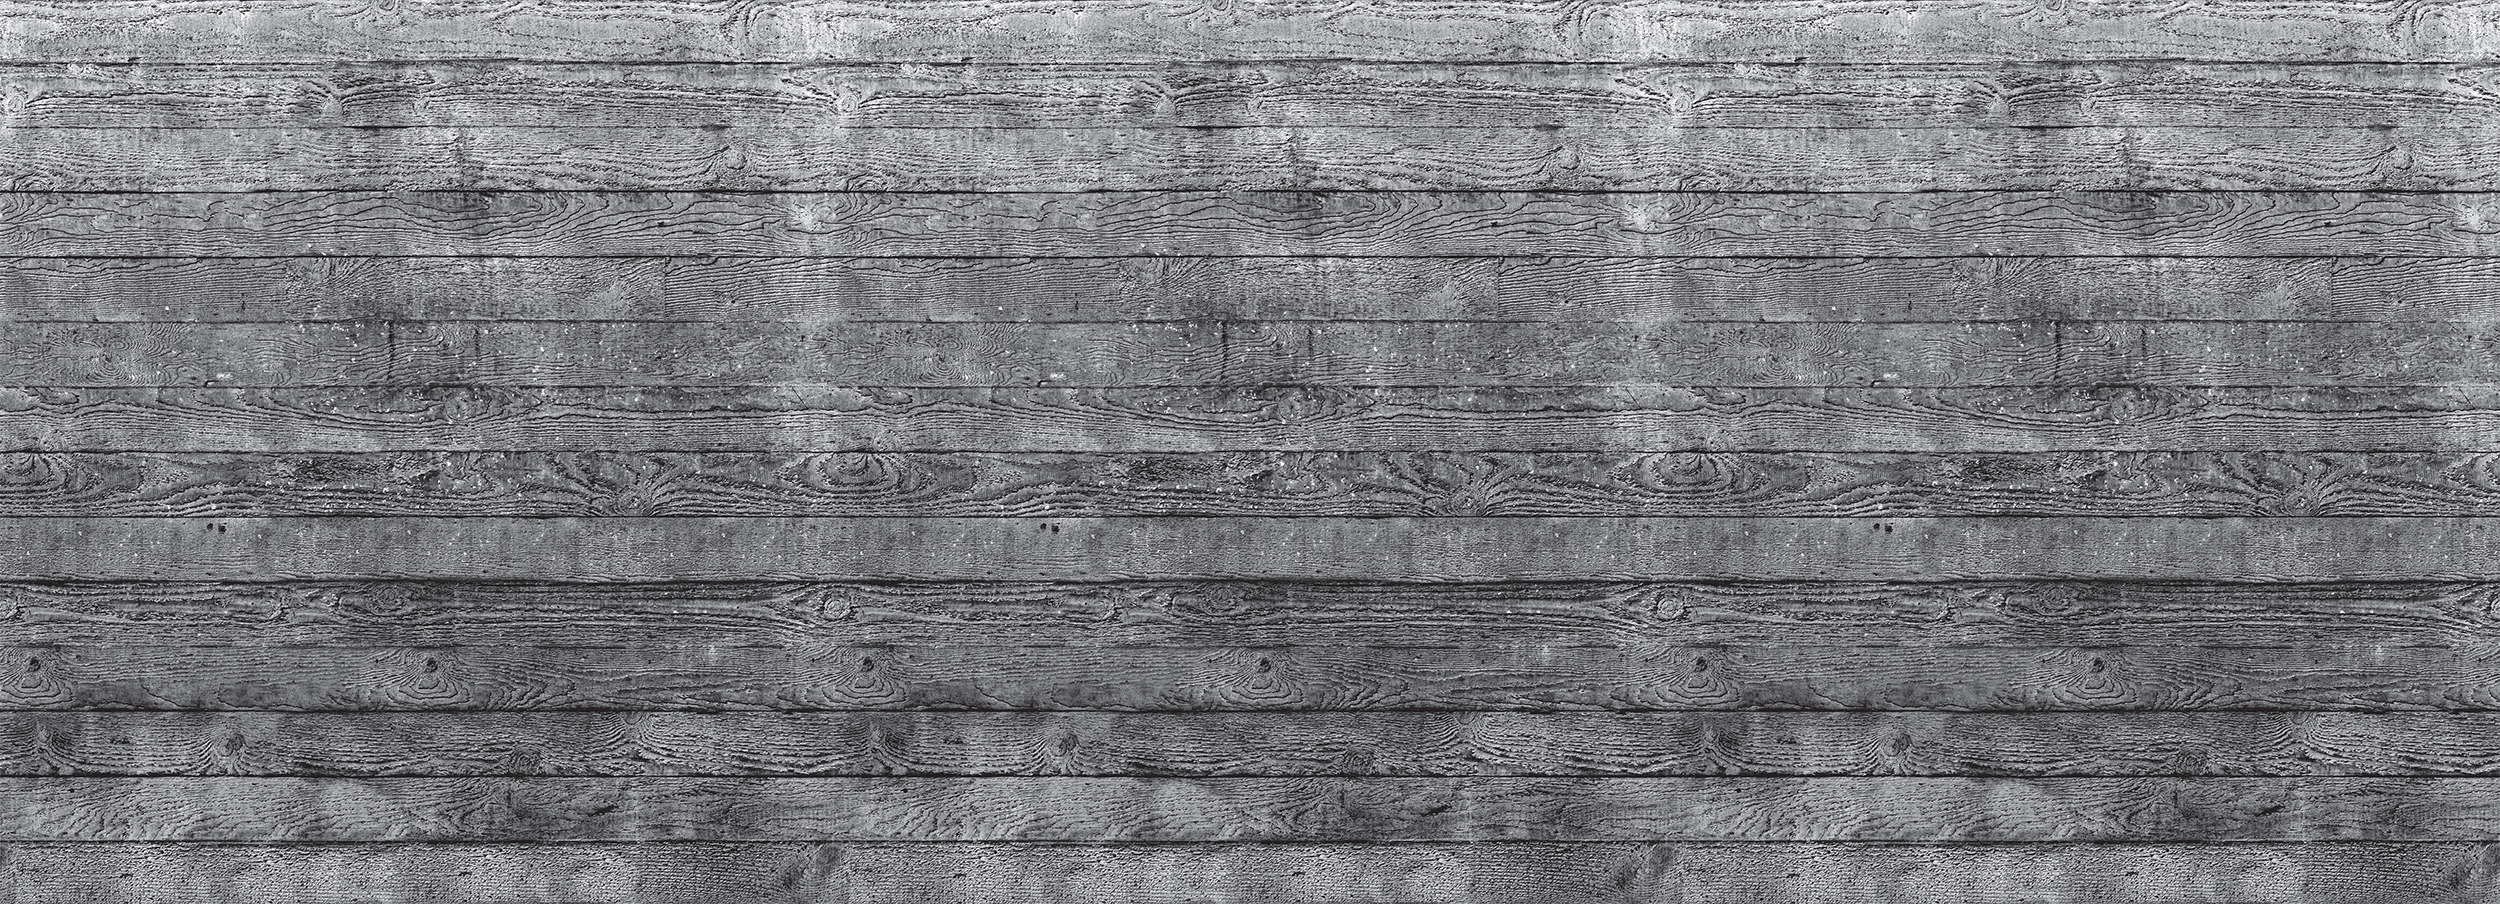 Concrete Wood Slate